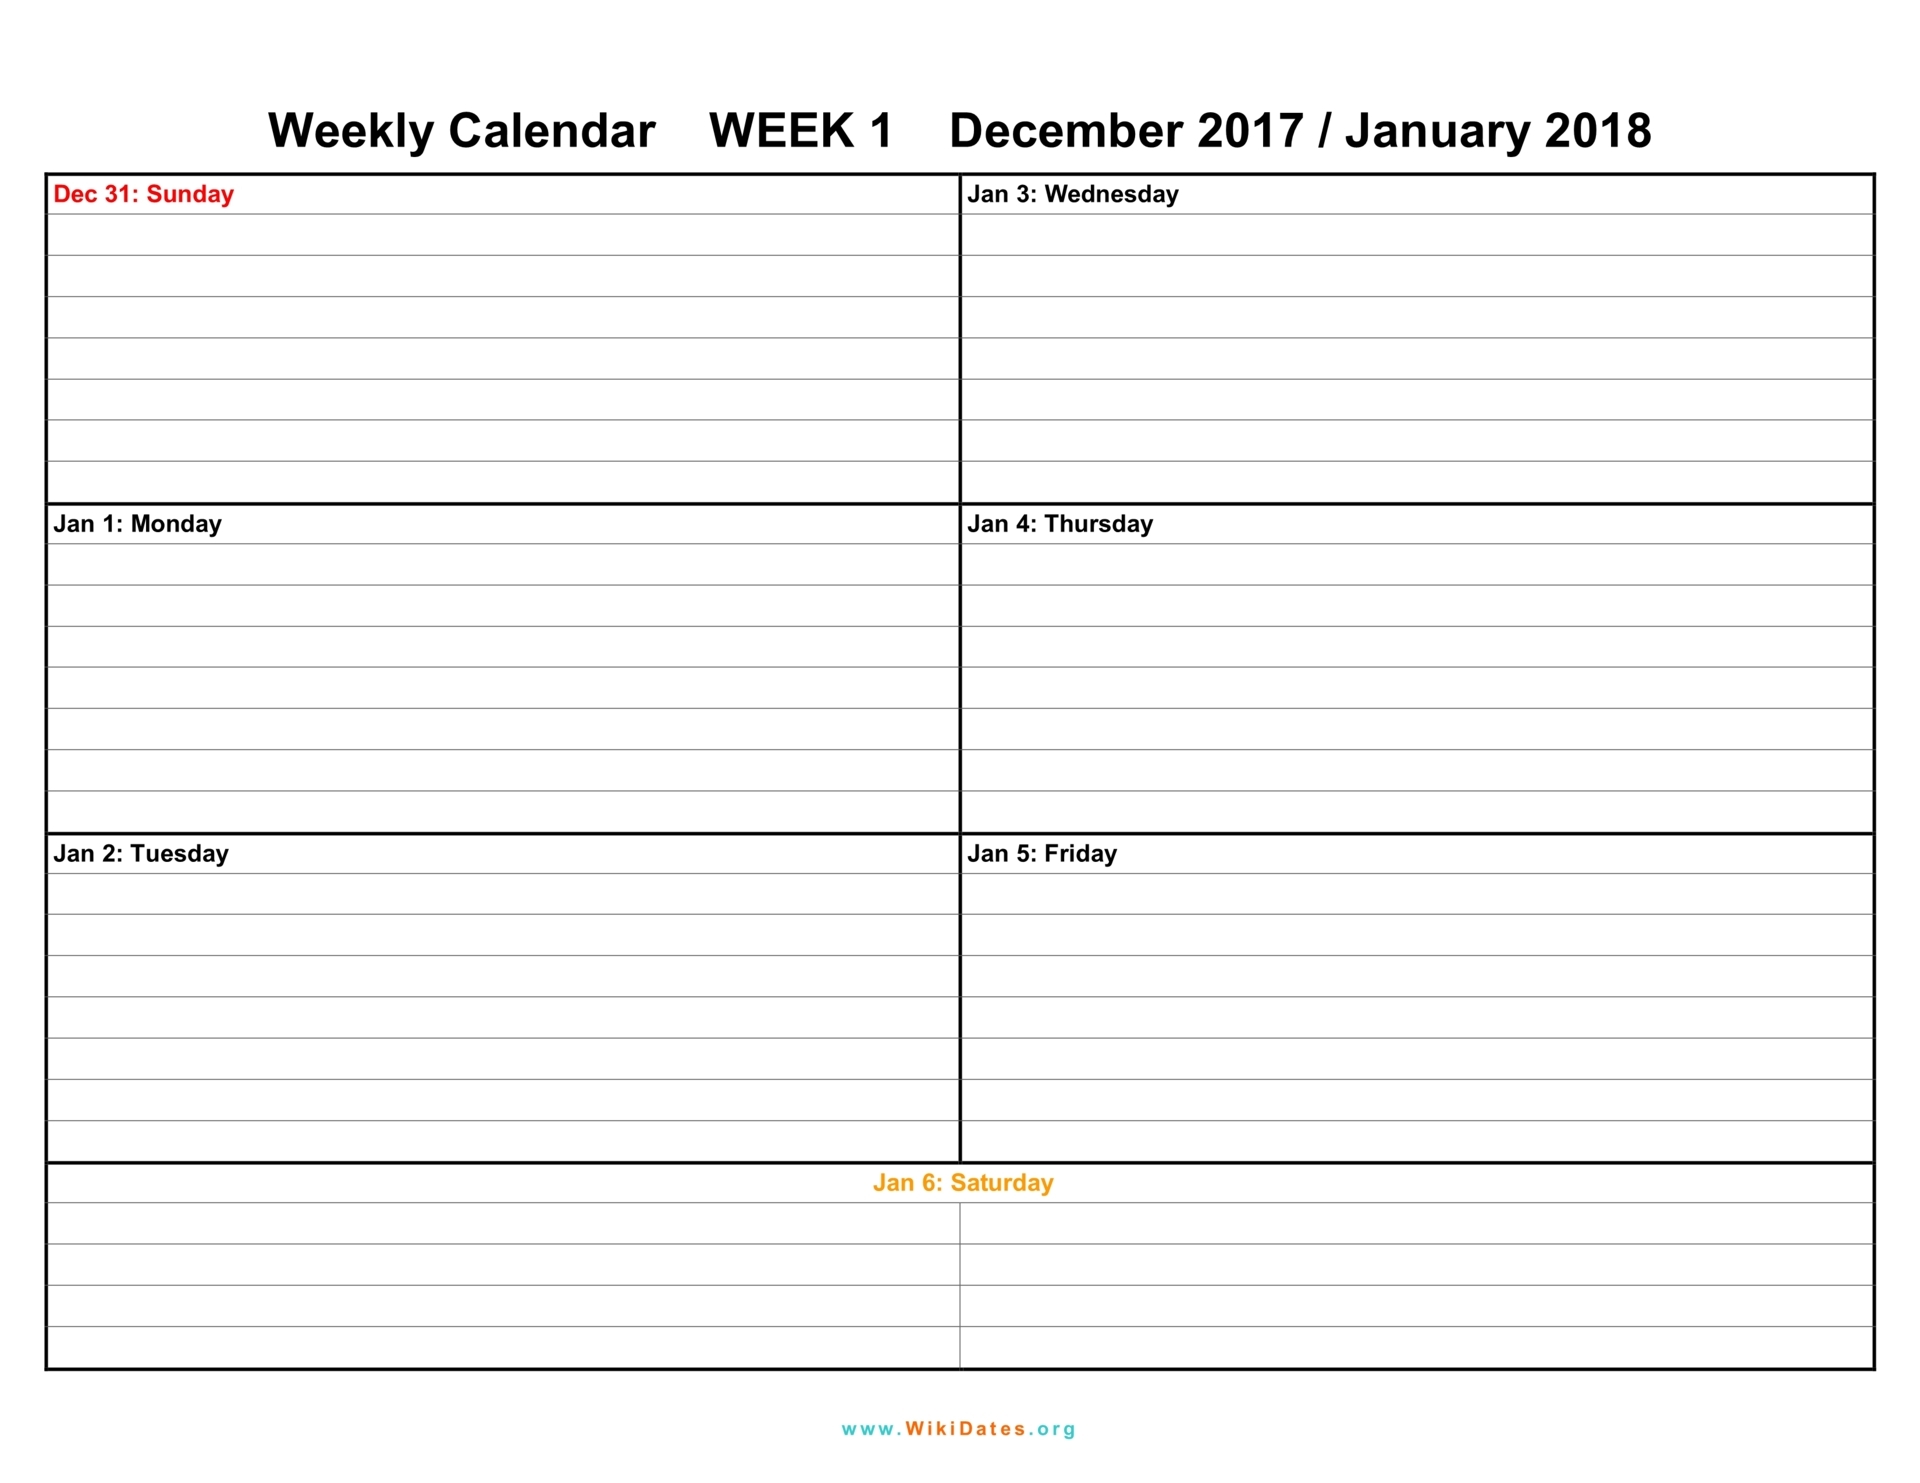 Weekly Calendar Download weekly calendar 2017 and 2018